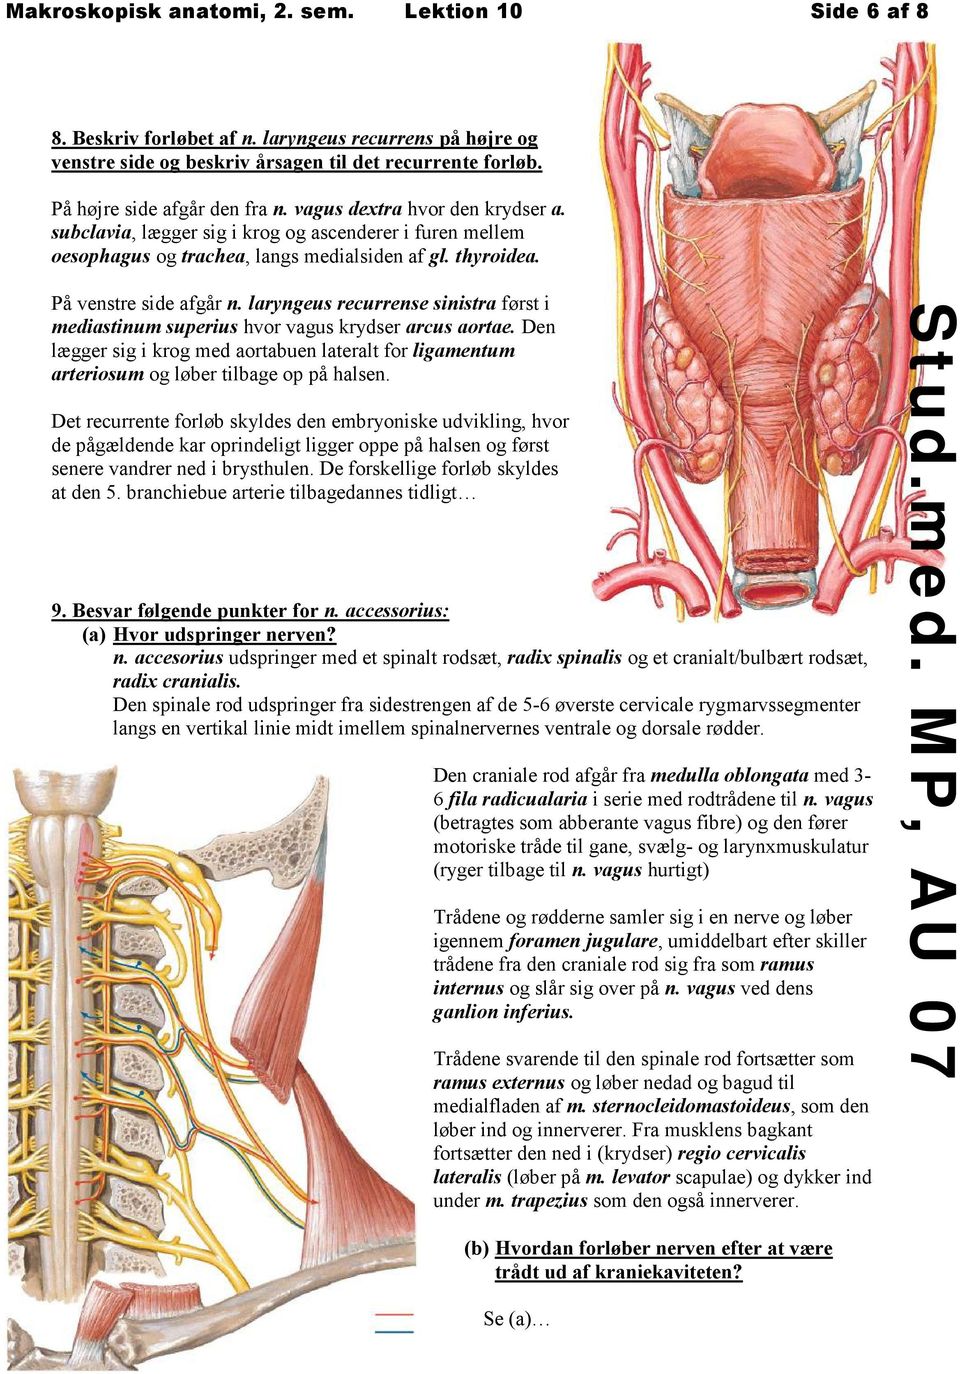 laryngeus recurrense sinistra først i mediastinum superius hvor vagus krydser arcus aortae. Den lægger sig i krog med aortabuen lateralt for ligamentum arteriosum og løber tilbage op på halsen.